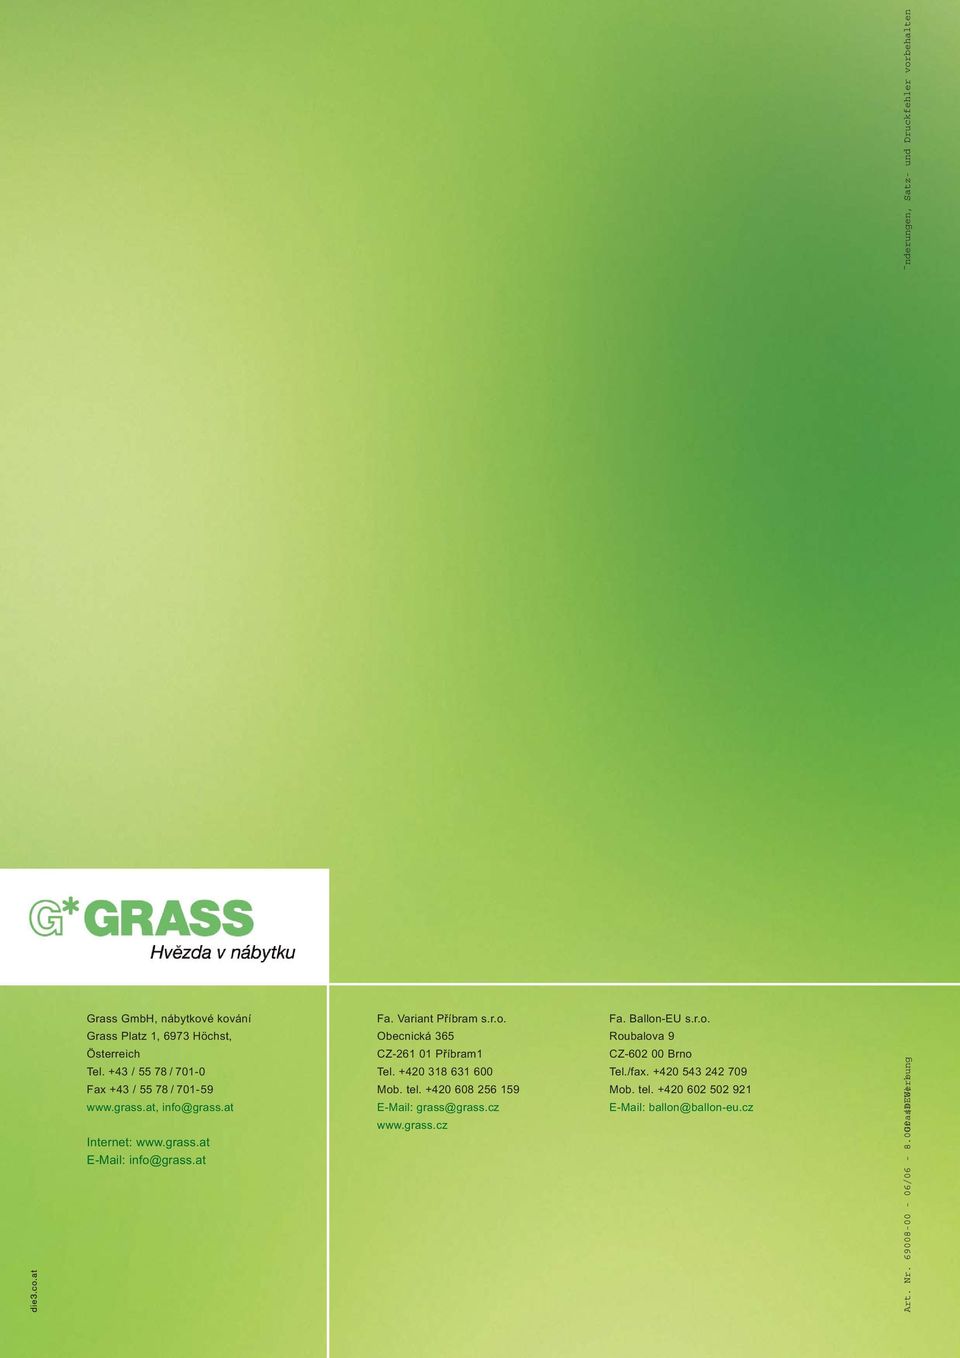 grass.at, info@grass.at E-Mail: grass@grass.cz E-Mail: ballon@ballon-eu.cz www.grass.cz Internet: www.grass.at E-Mail: info@grass.at Art. Nr.